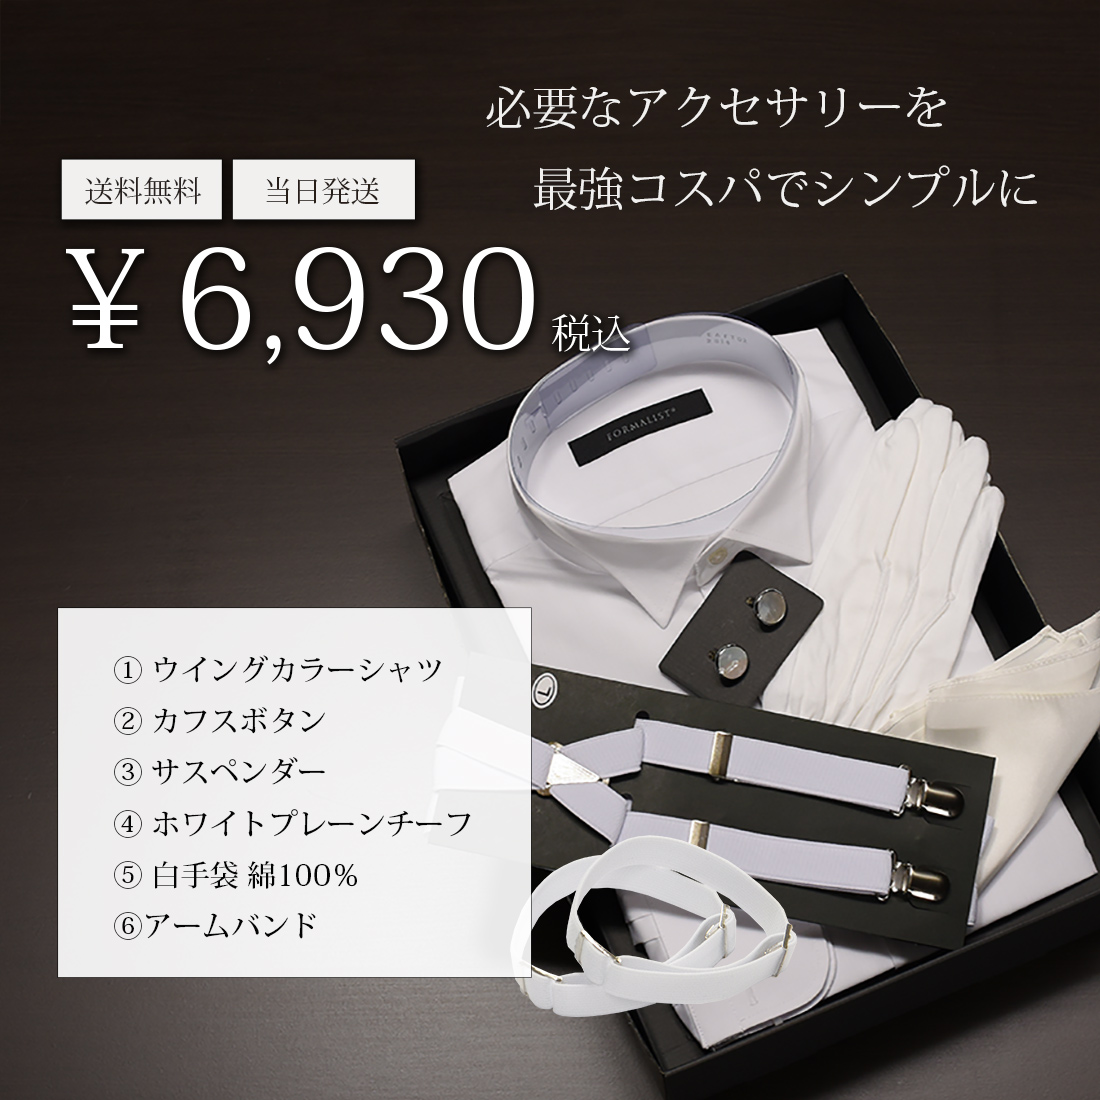 ウイングカラー フォーマルシャツ 6点セット 販売 TUXEDO STATION 東京 